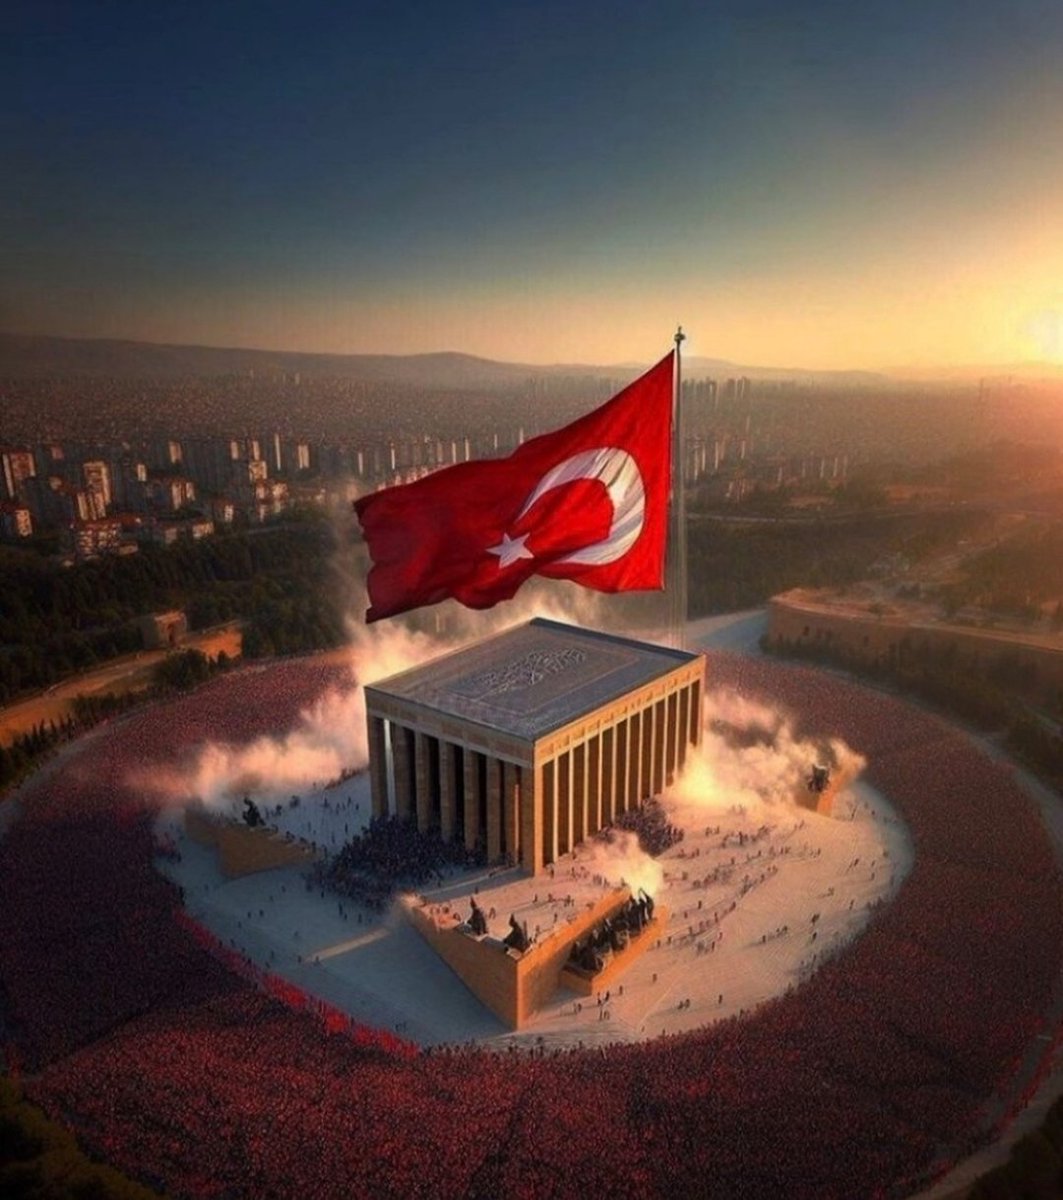 Anıtkabir.. Türk Milleti'nin yüreği burada atıyor. 
Yaktığın ışık sonsuza kadar parıldayacak, hiç sönmeyecek #ATAM 🇹🇷